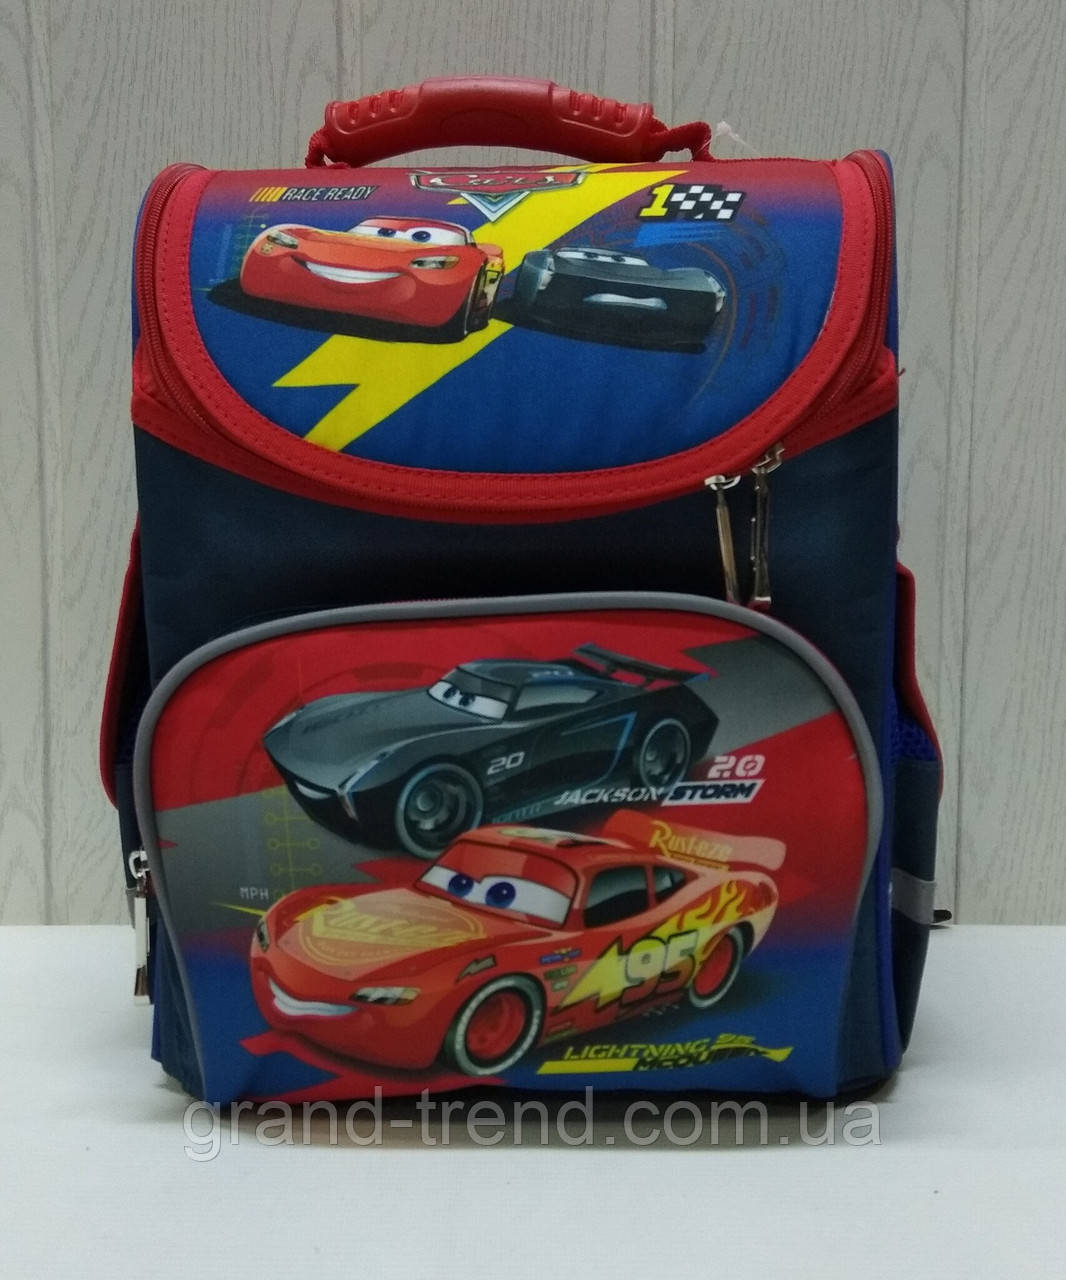 Дитячий шкільний рюкзак для 1-2 класу Маквін